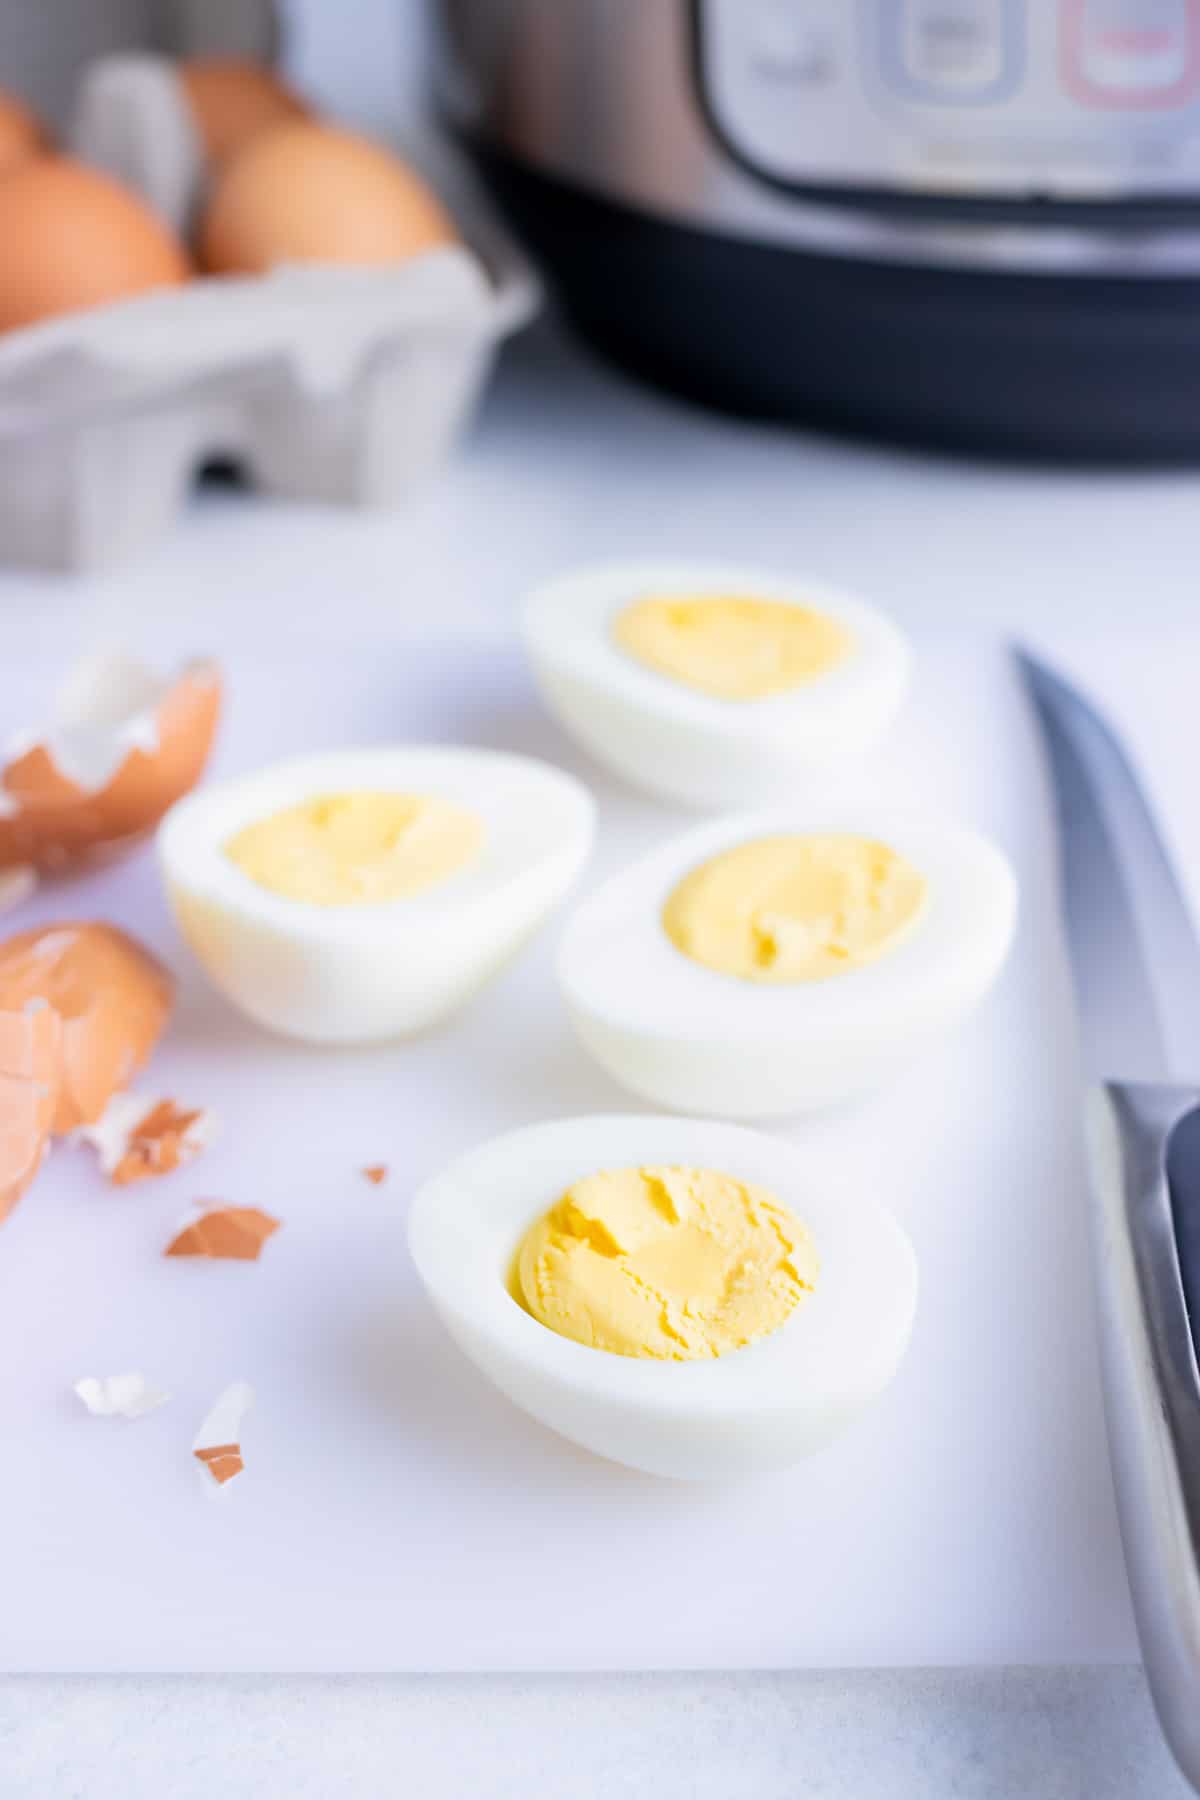 https://www.evolvingtable.com/wp-content/uploads/2022/02/Instant-Pot-Hard-Boiled-Eggs-14.jpg